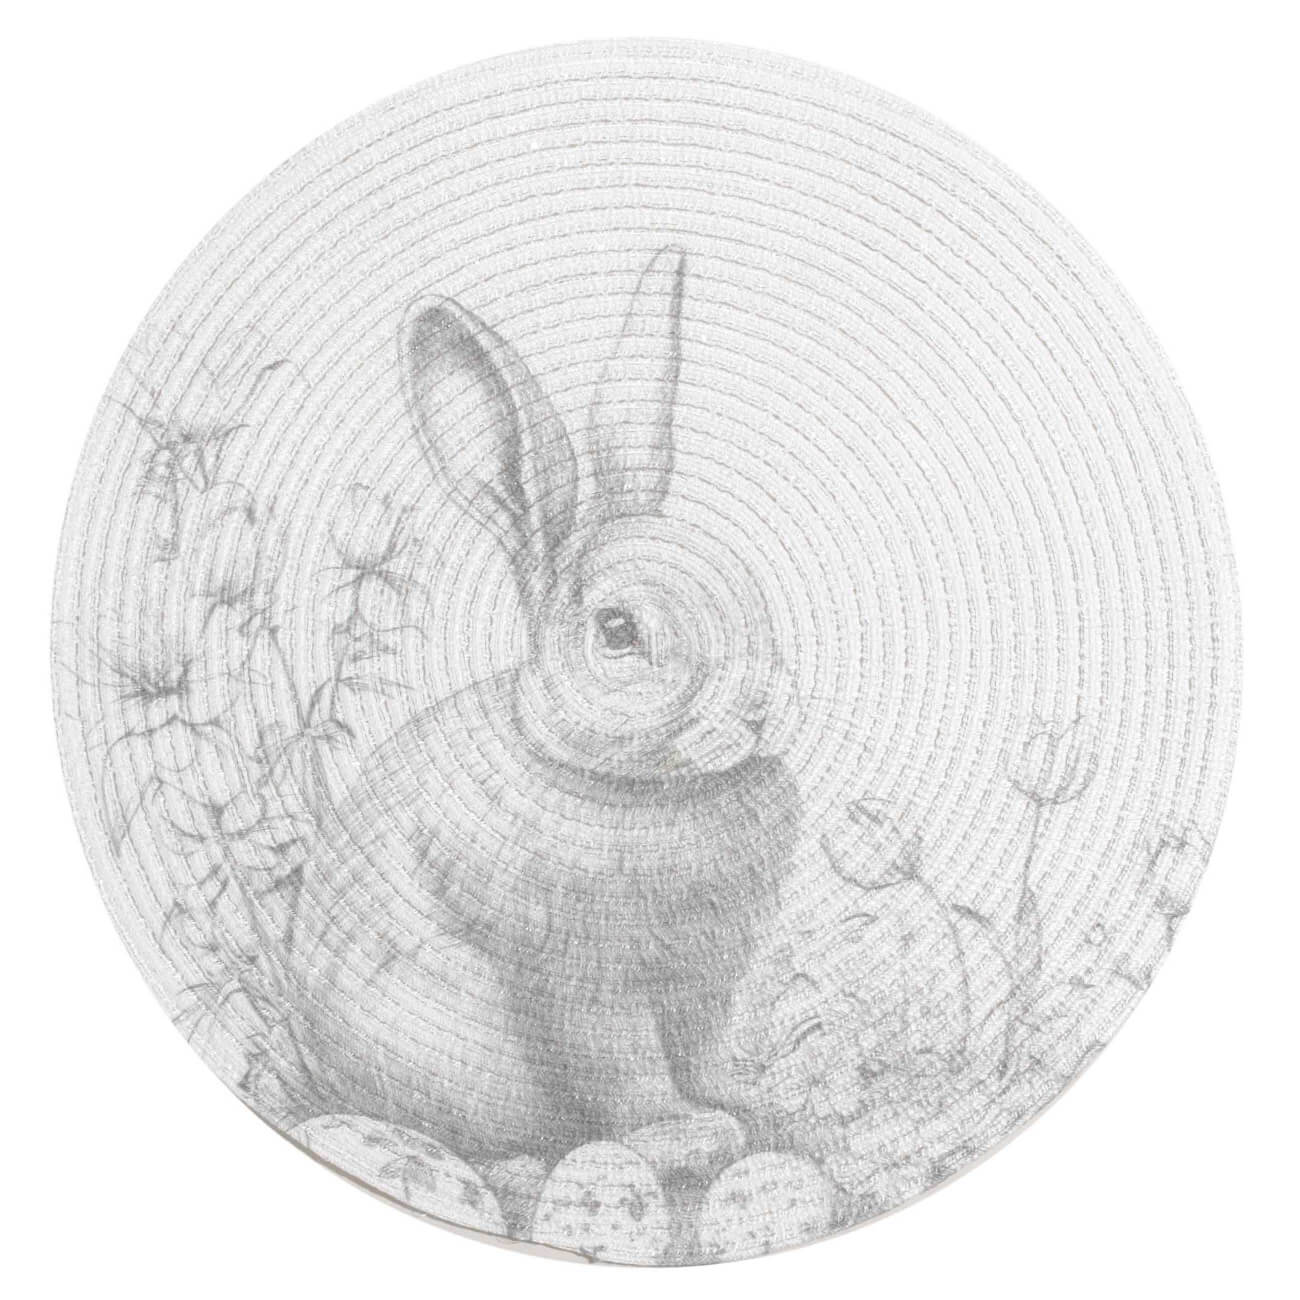 Салфетка под приборы, 38 см, полиэстер, круглая, белая, Графичный кролик, Rotary print